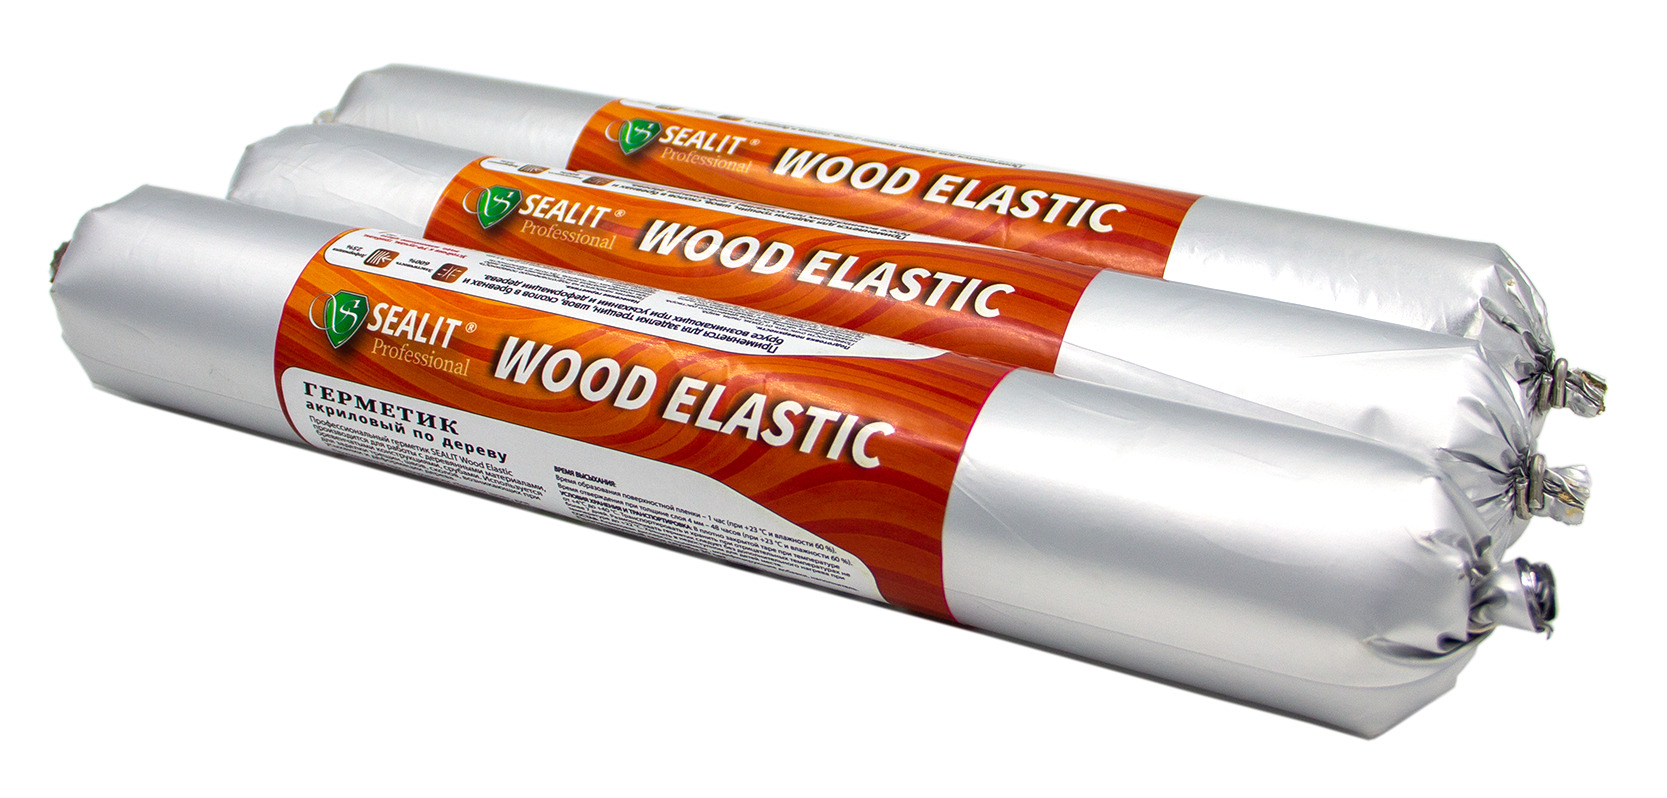 Герметик для дерева акриловый Sealit Wood Elastic, 900 гр, Сосна герметик для дерева акриловый sealit wood elastic 900 гр дуб